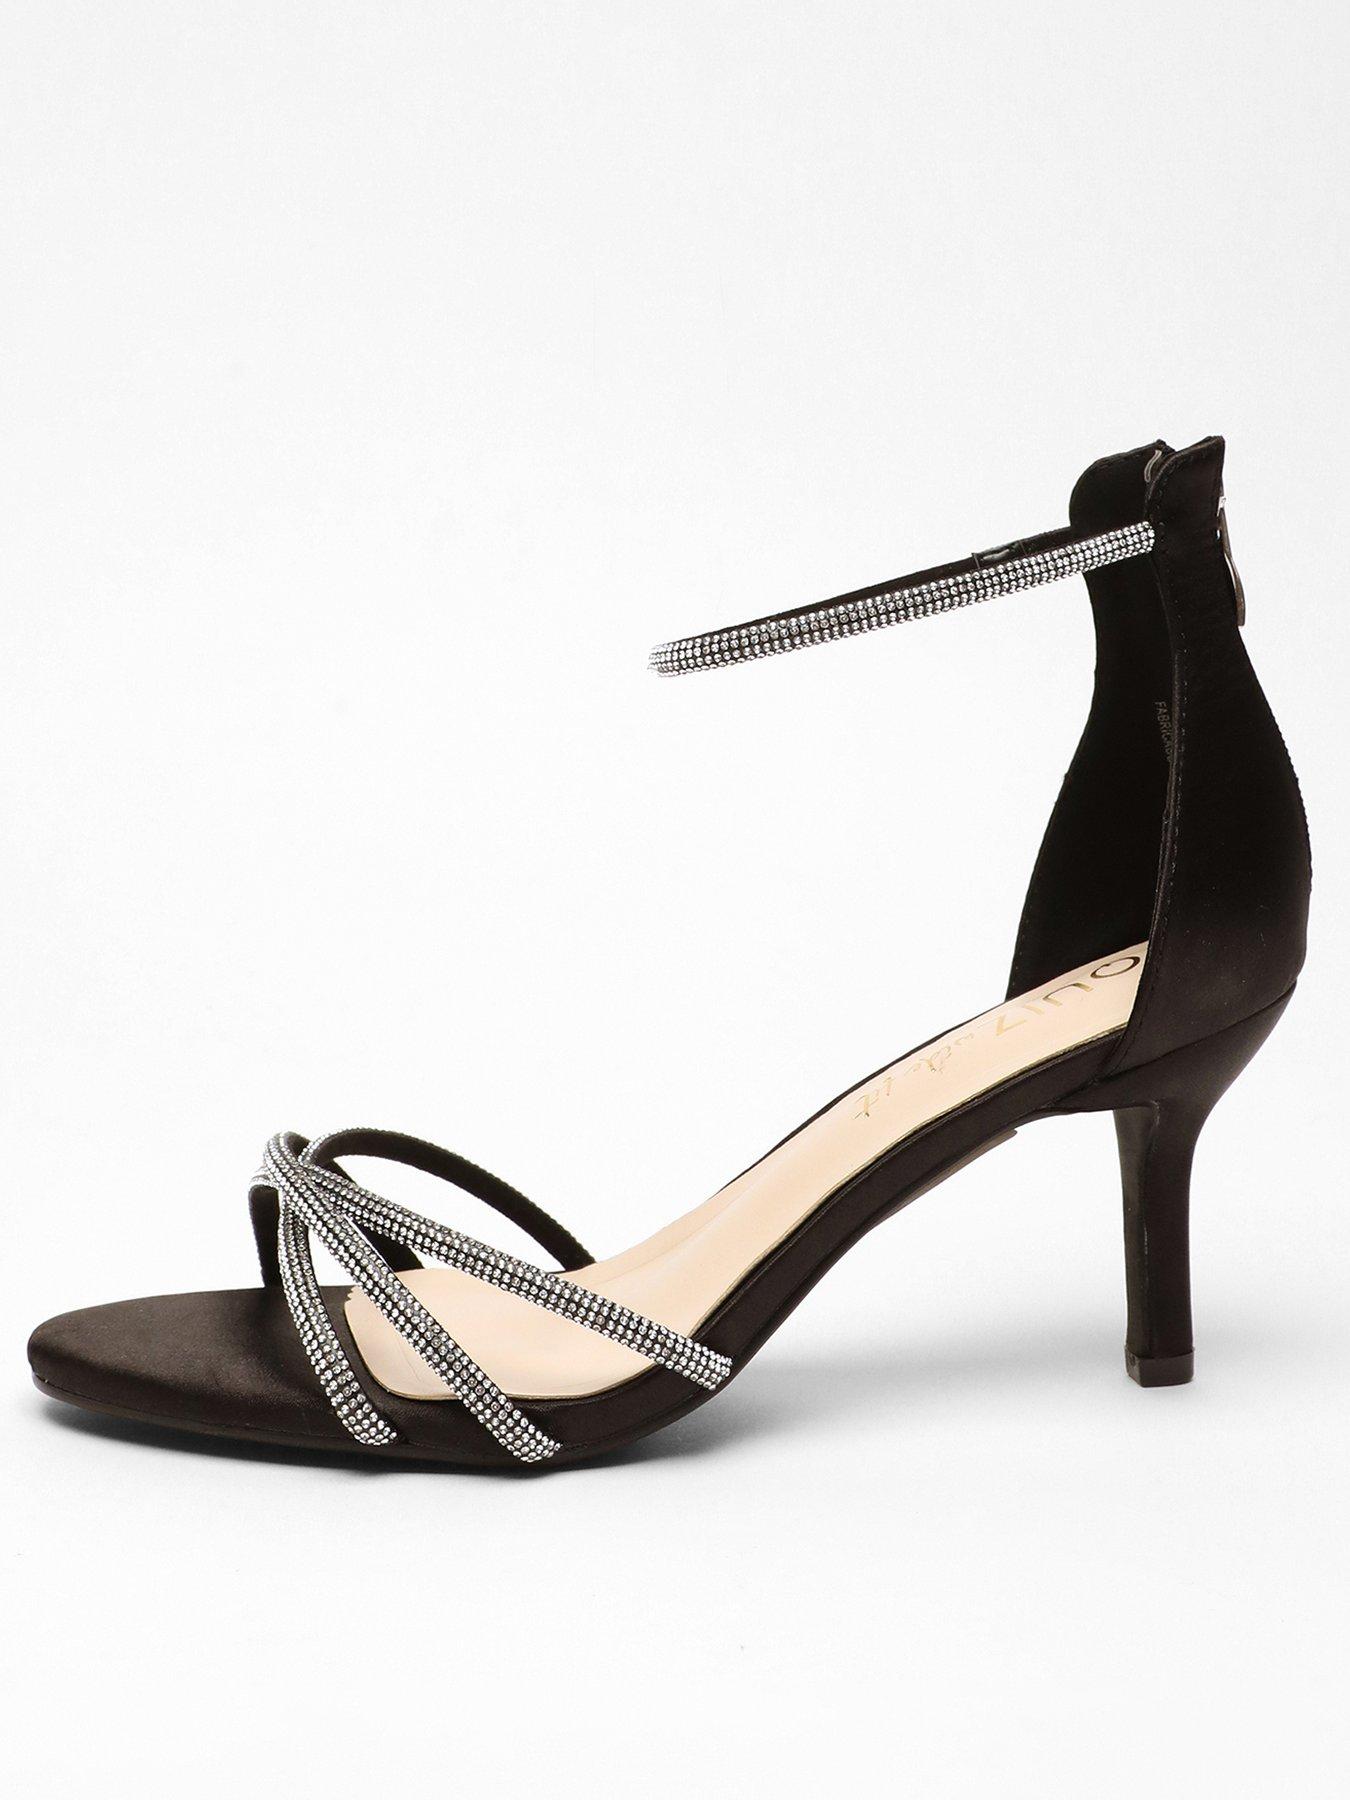 The Magic Block Heel - Caramel | Heels, 5 inch heels, Block heels